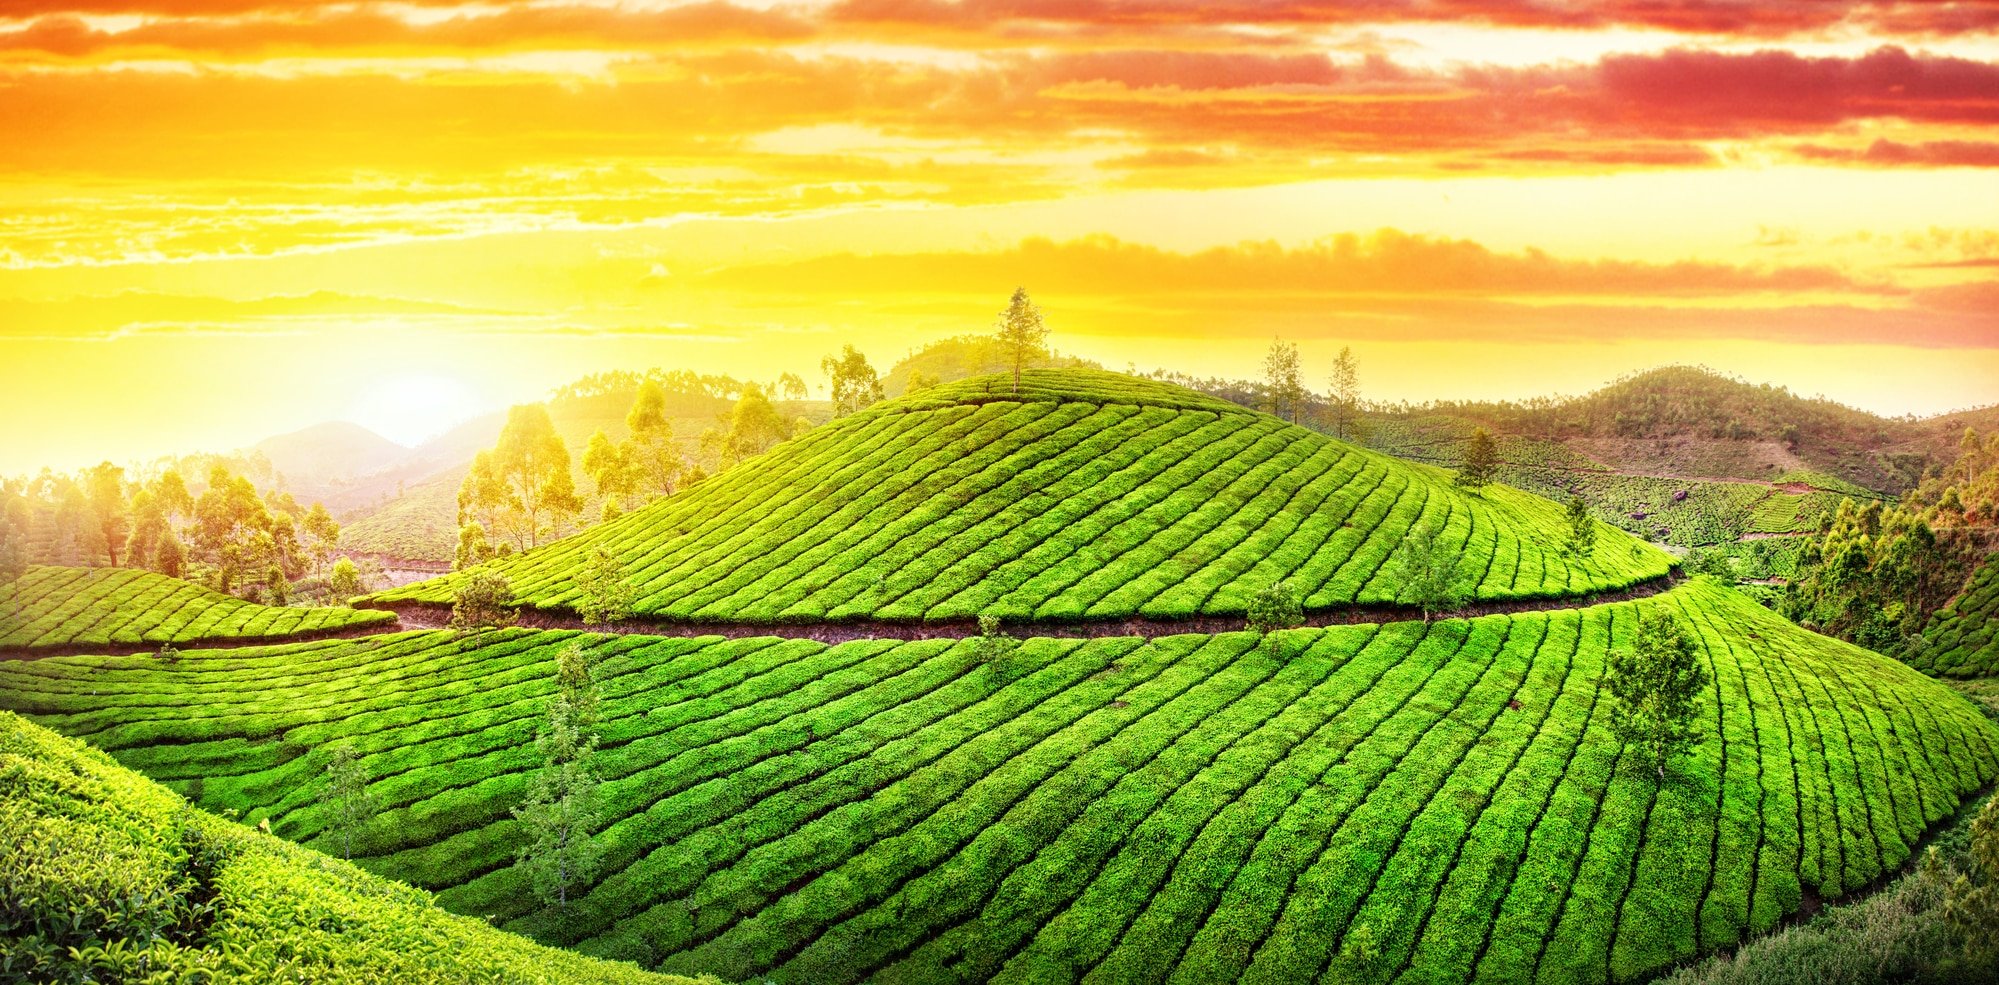 Tea plantations hills at sunset sky in Munnar, Keraala, India